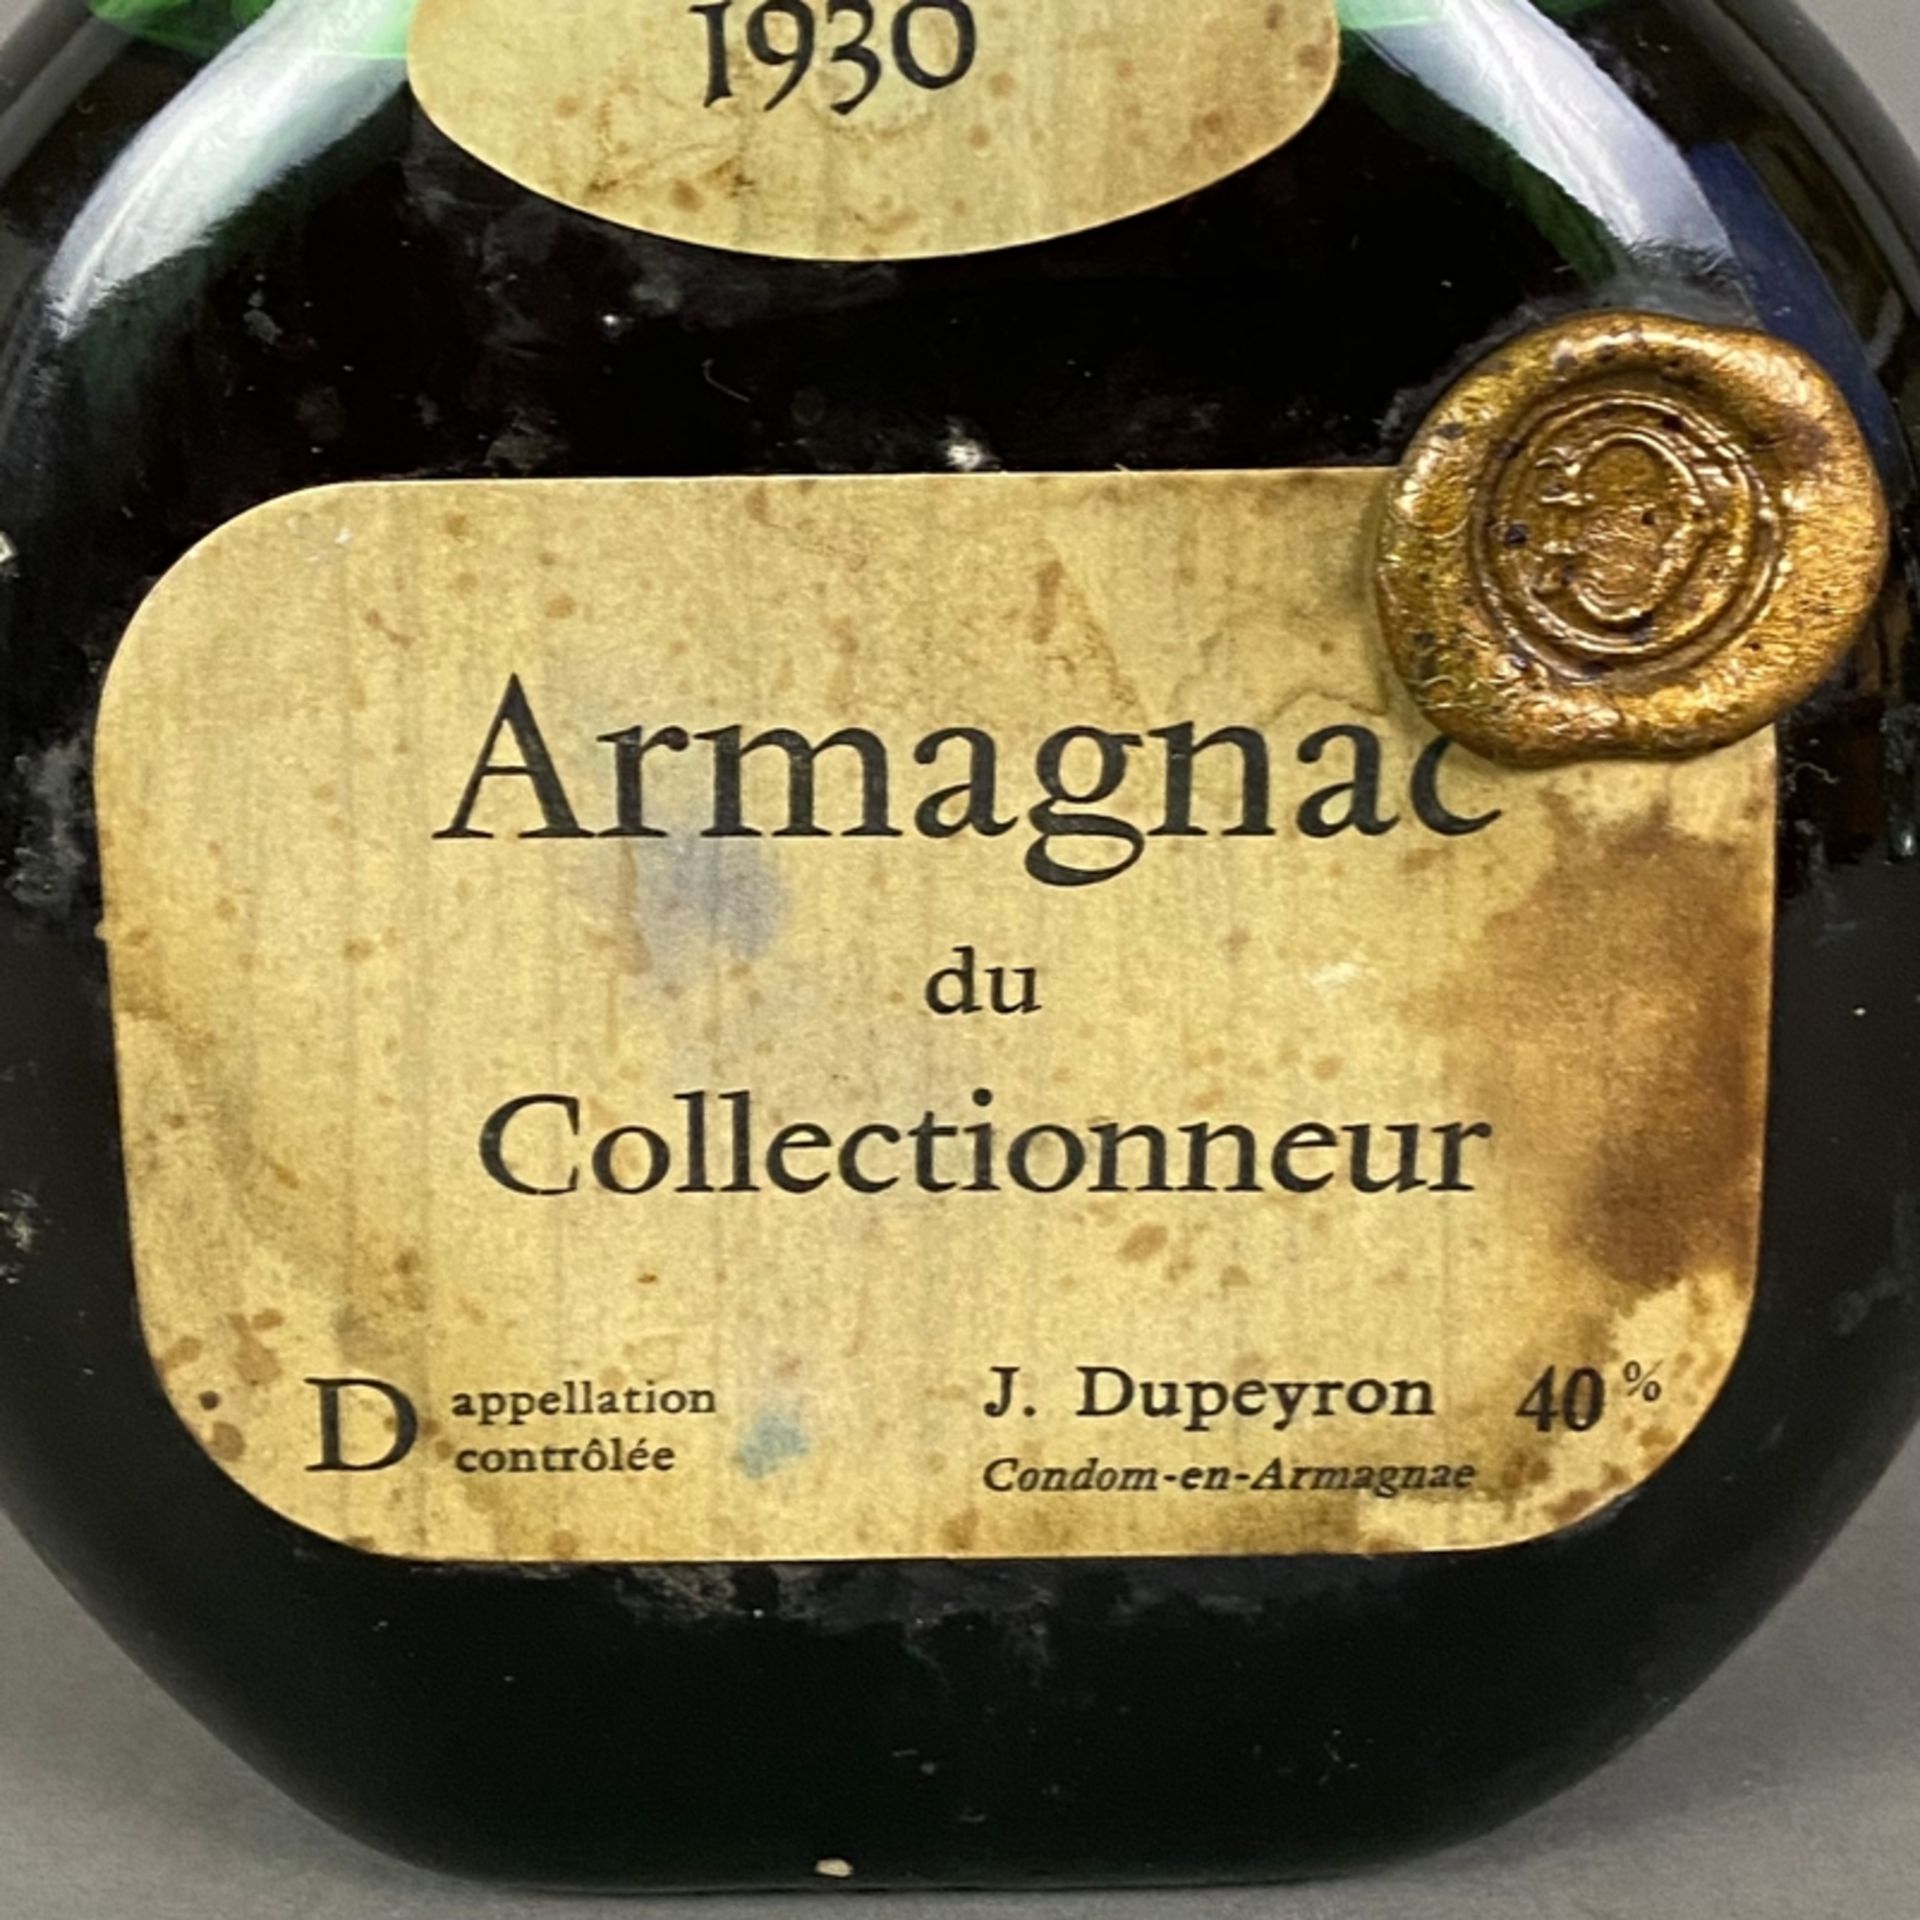 Armagnac - Armagnac du Collectionneur, J. Dupeyron, 1930, 70 cl, 40%, Füllstand: Low Shoulder, Etik - Bild 2 aus 5